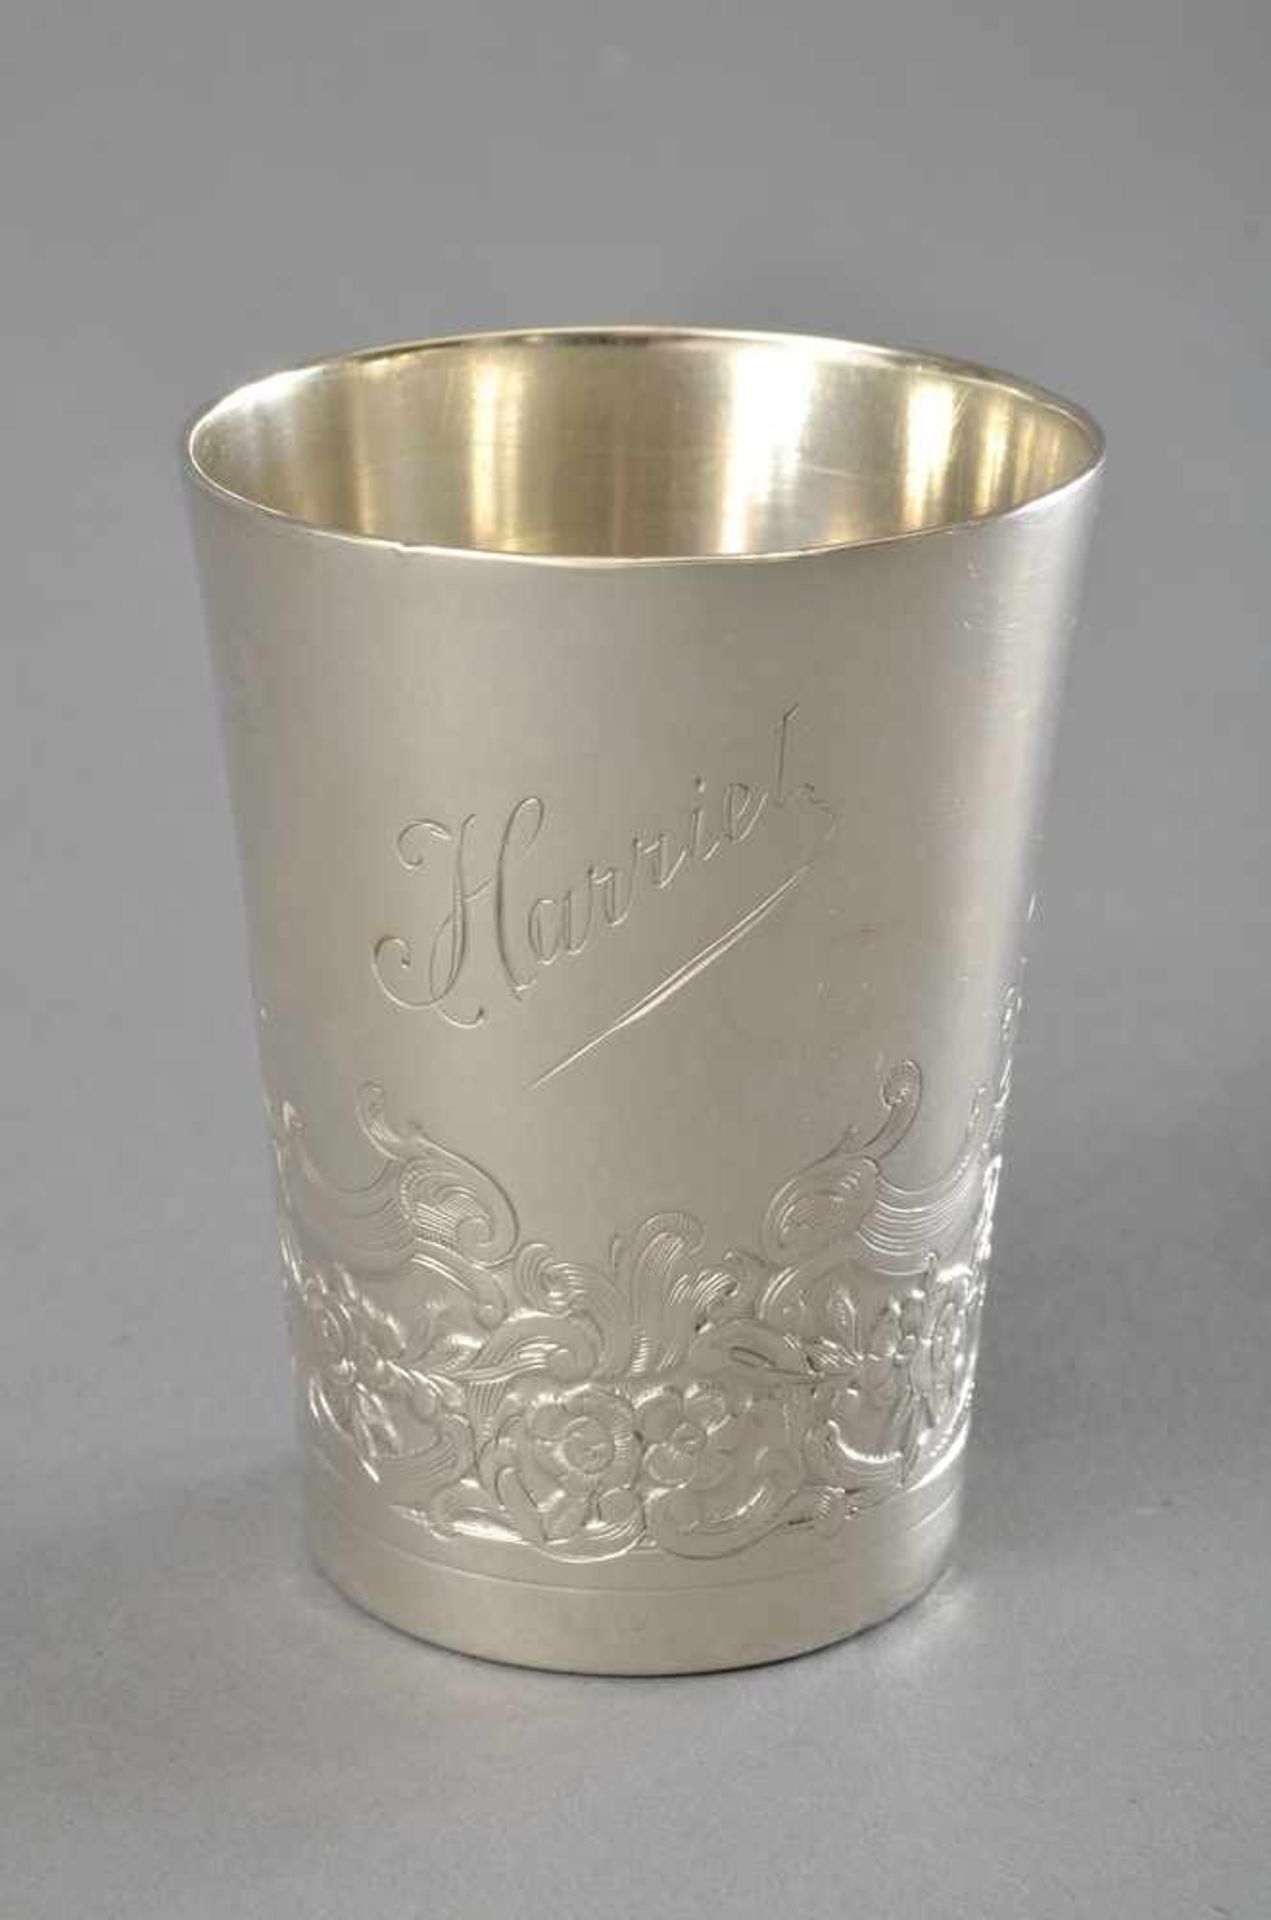 Gravierter Becher "Harriet" mit Blumenrocaillen, Bruckmann & Söhne, Silber 800, 98g, H. 8cm,